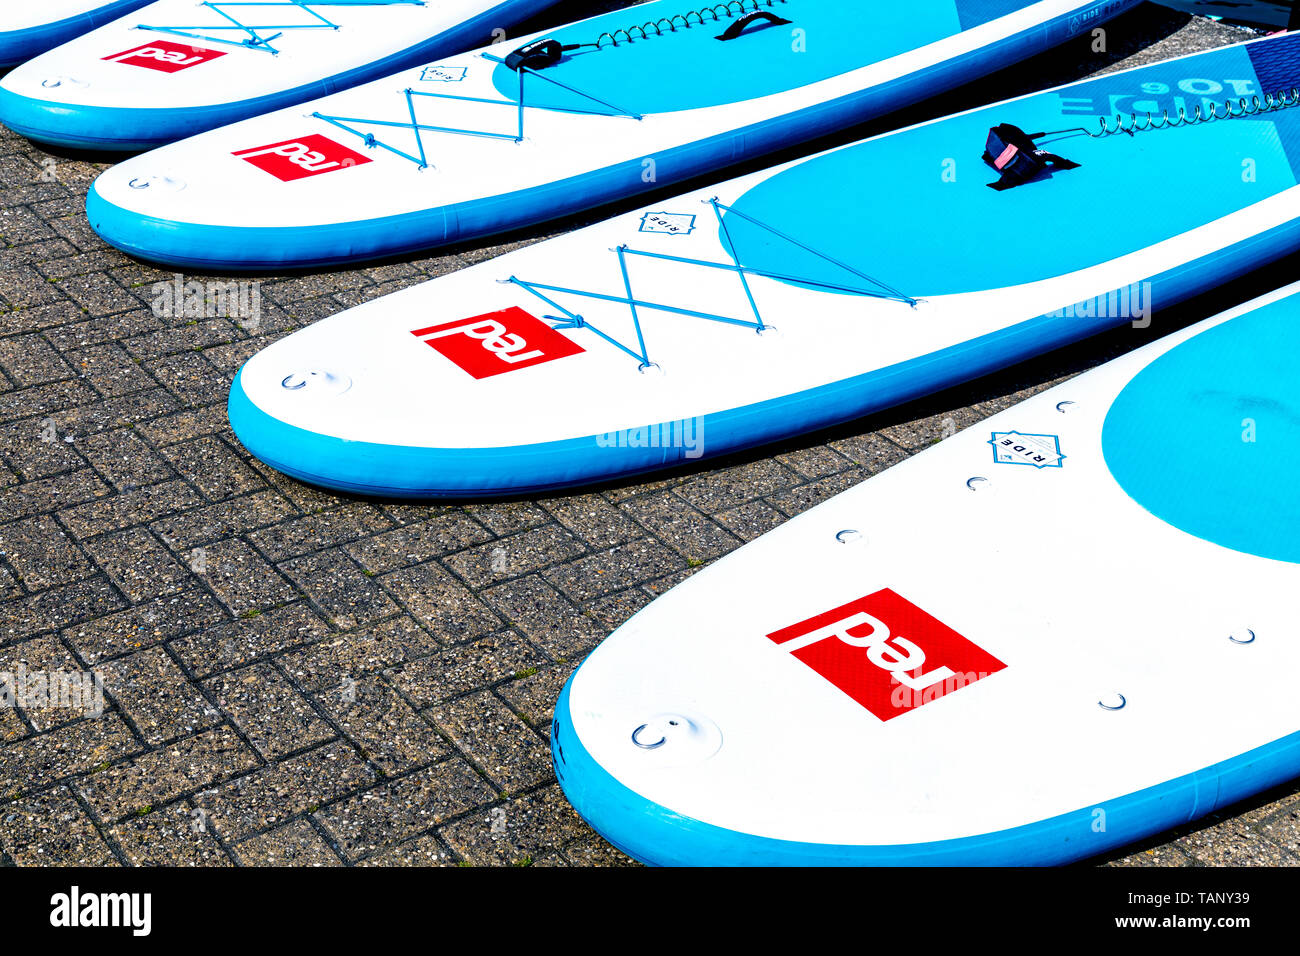 Paddle boards disposés sur le terrain Banque D'Images